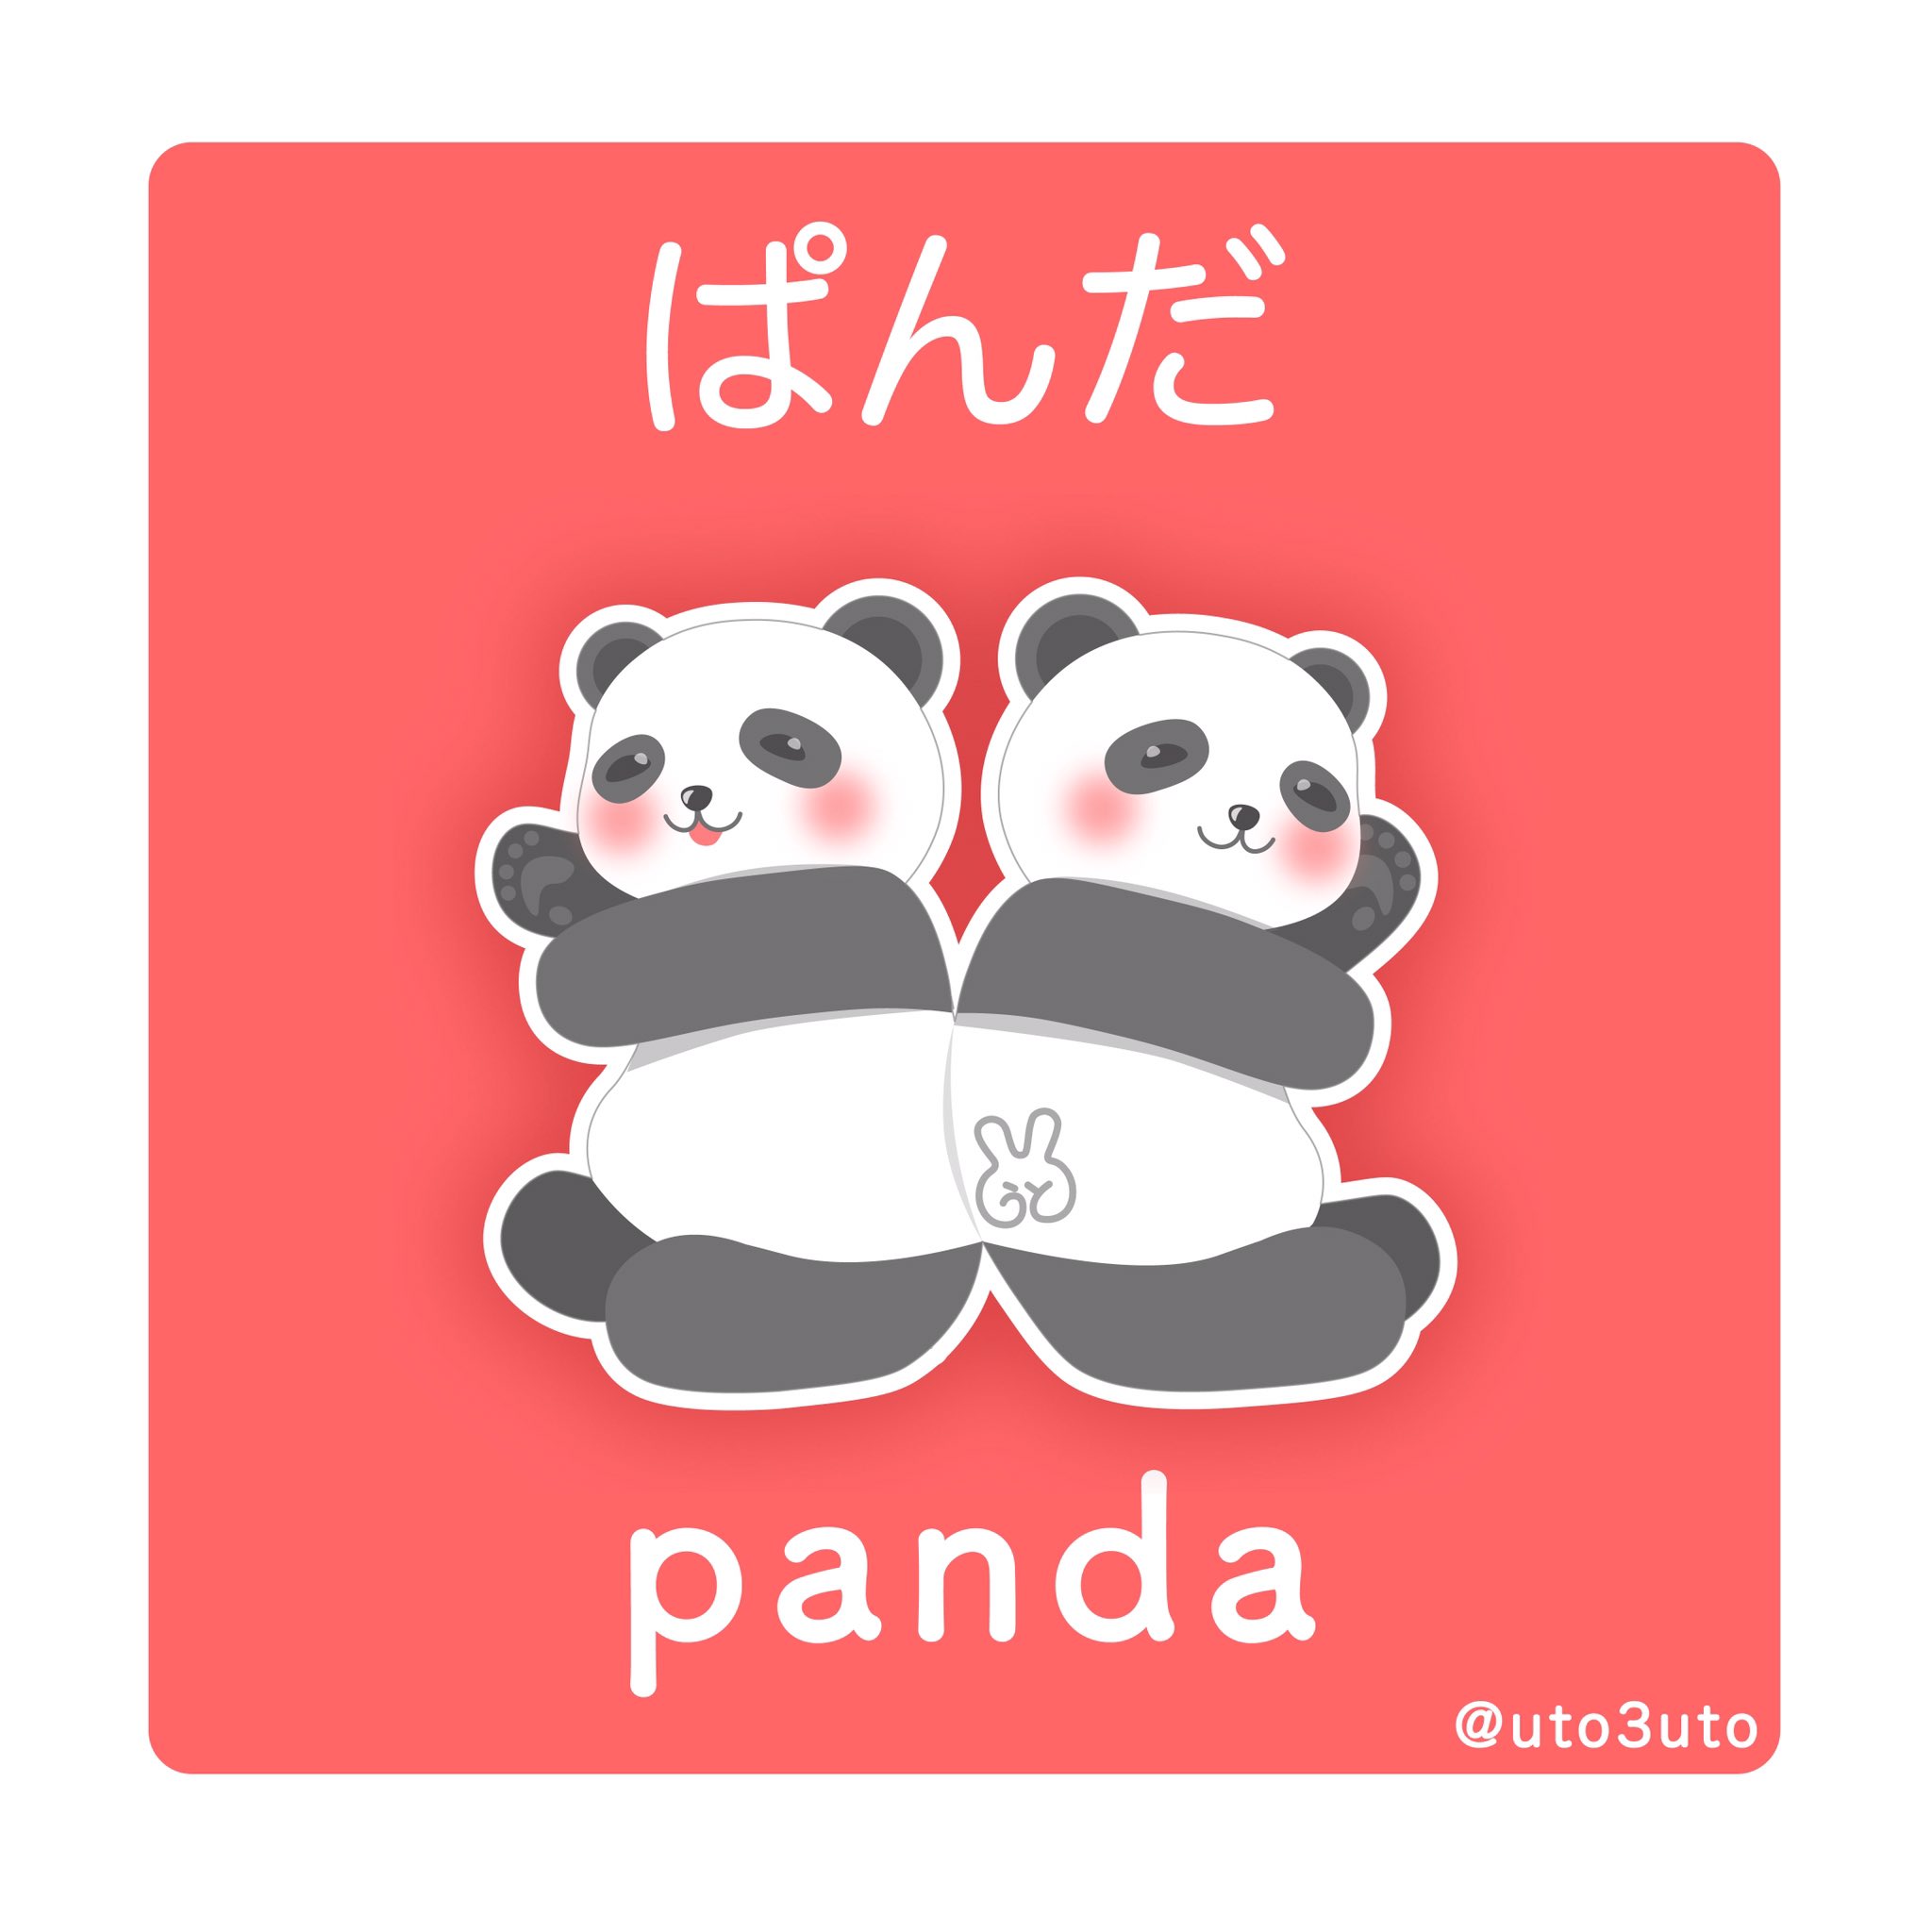 うと 双子の仲良しパンダさん うとぎゃらり パンダ 双子パンダ ゆるかわ ゆるいイラスト ゆるかわイラスト イラスト好きな人と繋がりたい 絵描きさんと繫がりたい 絵 イラスト Panda Pandas Adobeillustrator ゆるい絵 双子